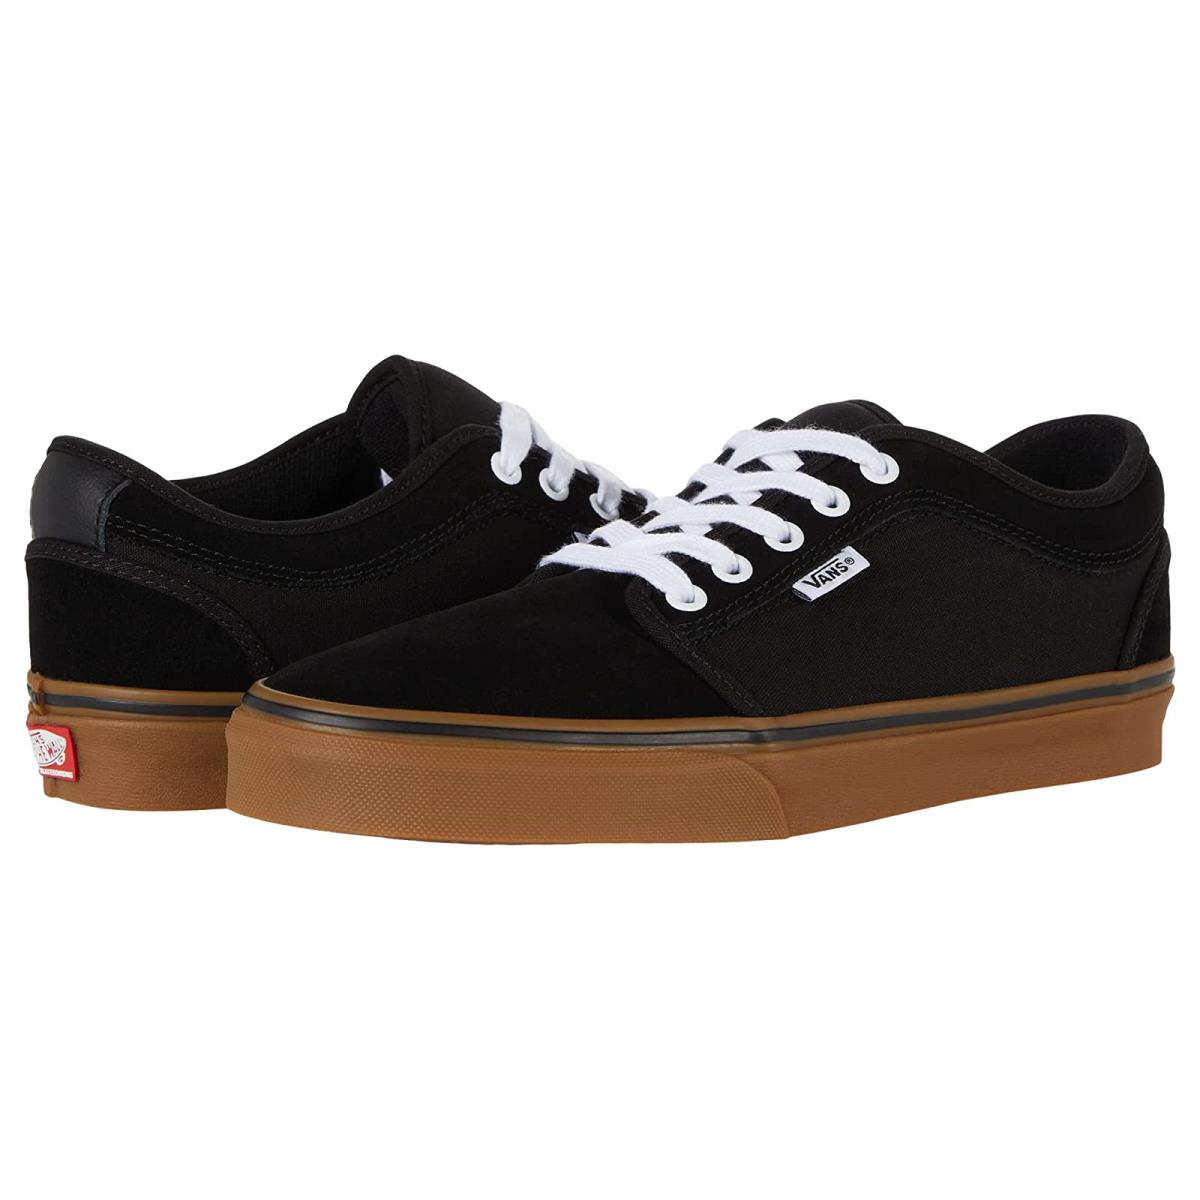 Man`s Sneakers Athletic Shoes Vans Skate Chukka Low Black/Black/Gum